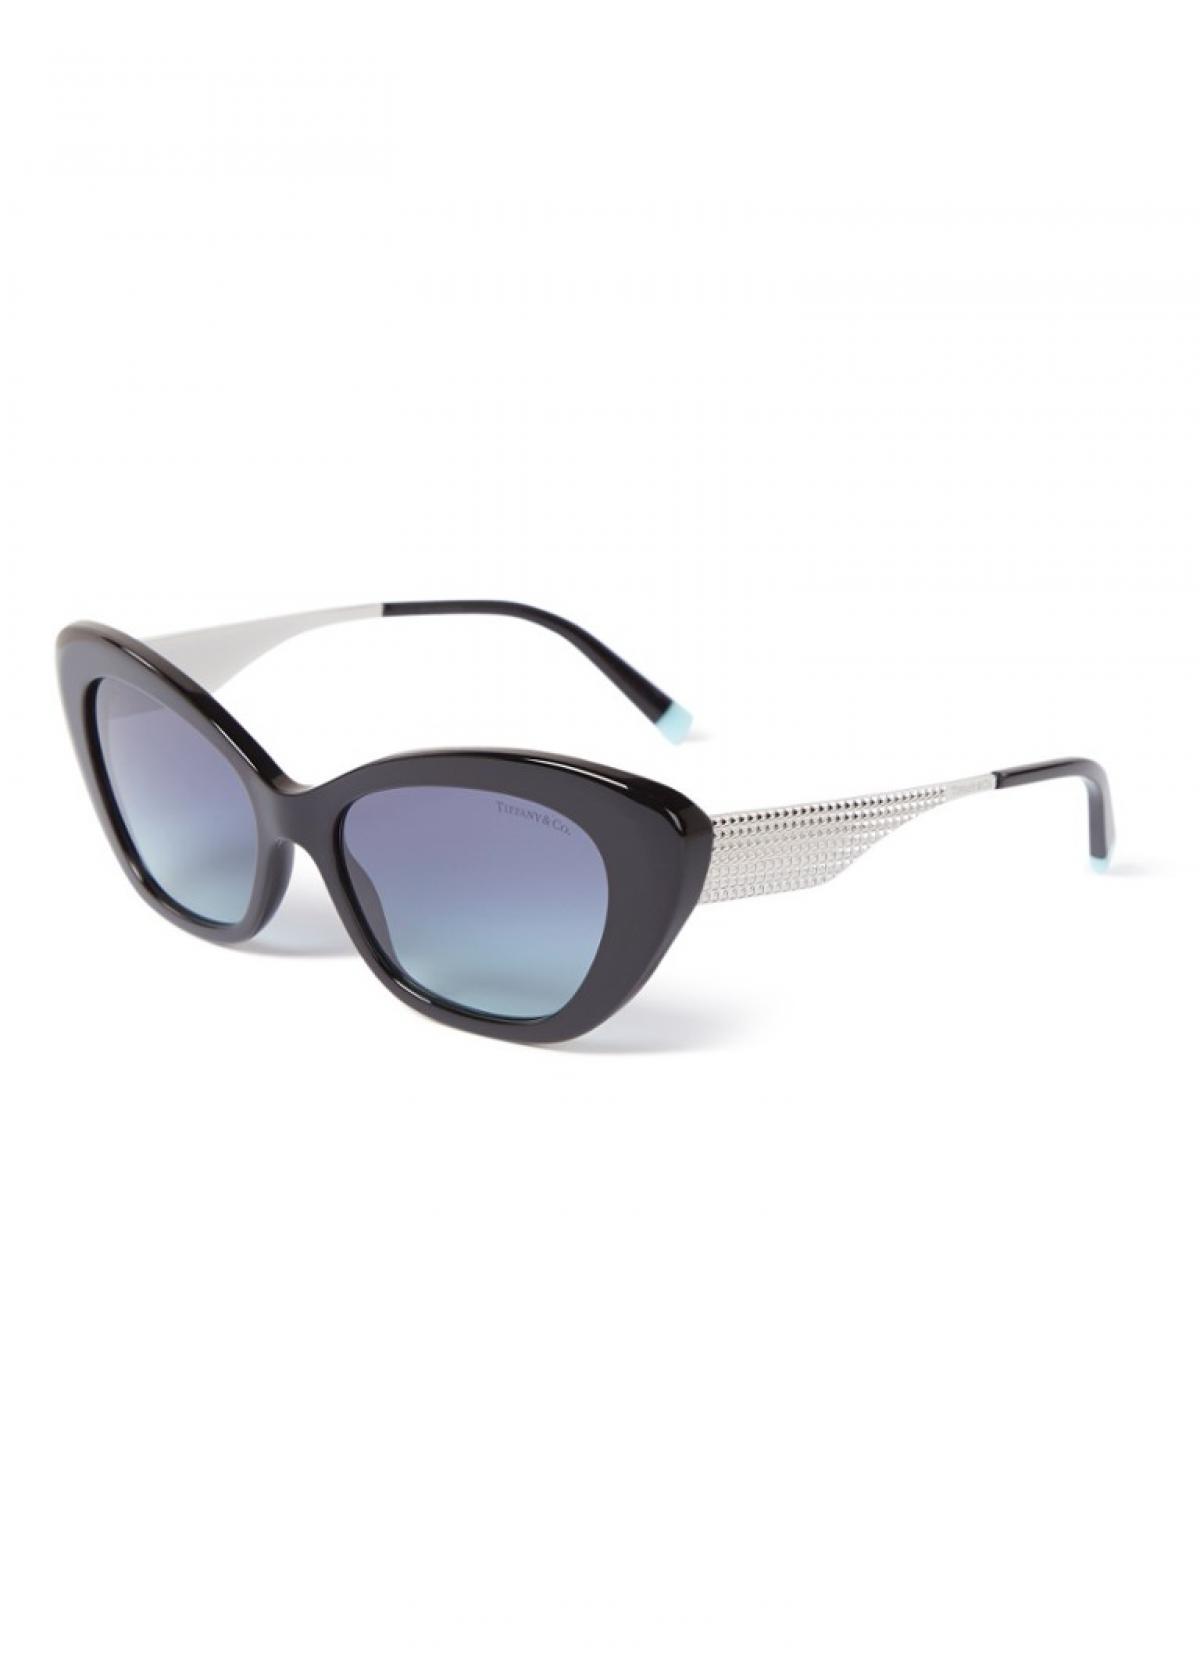 Les lunettes de soleil Tiffany & Co